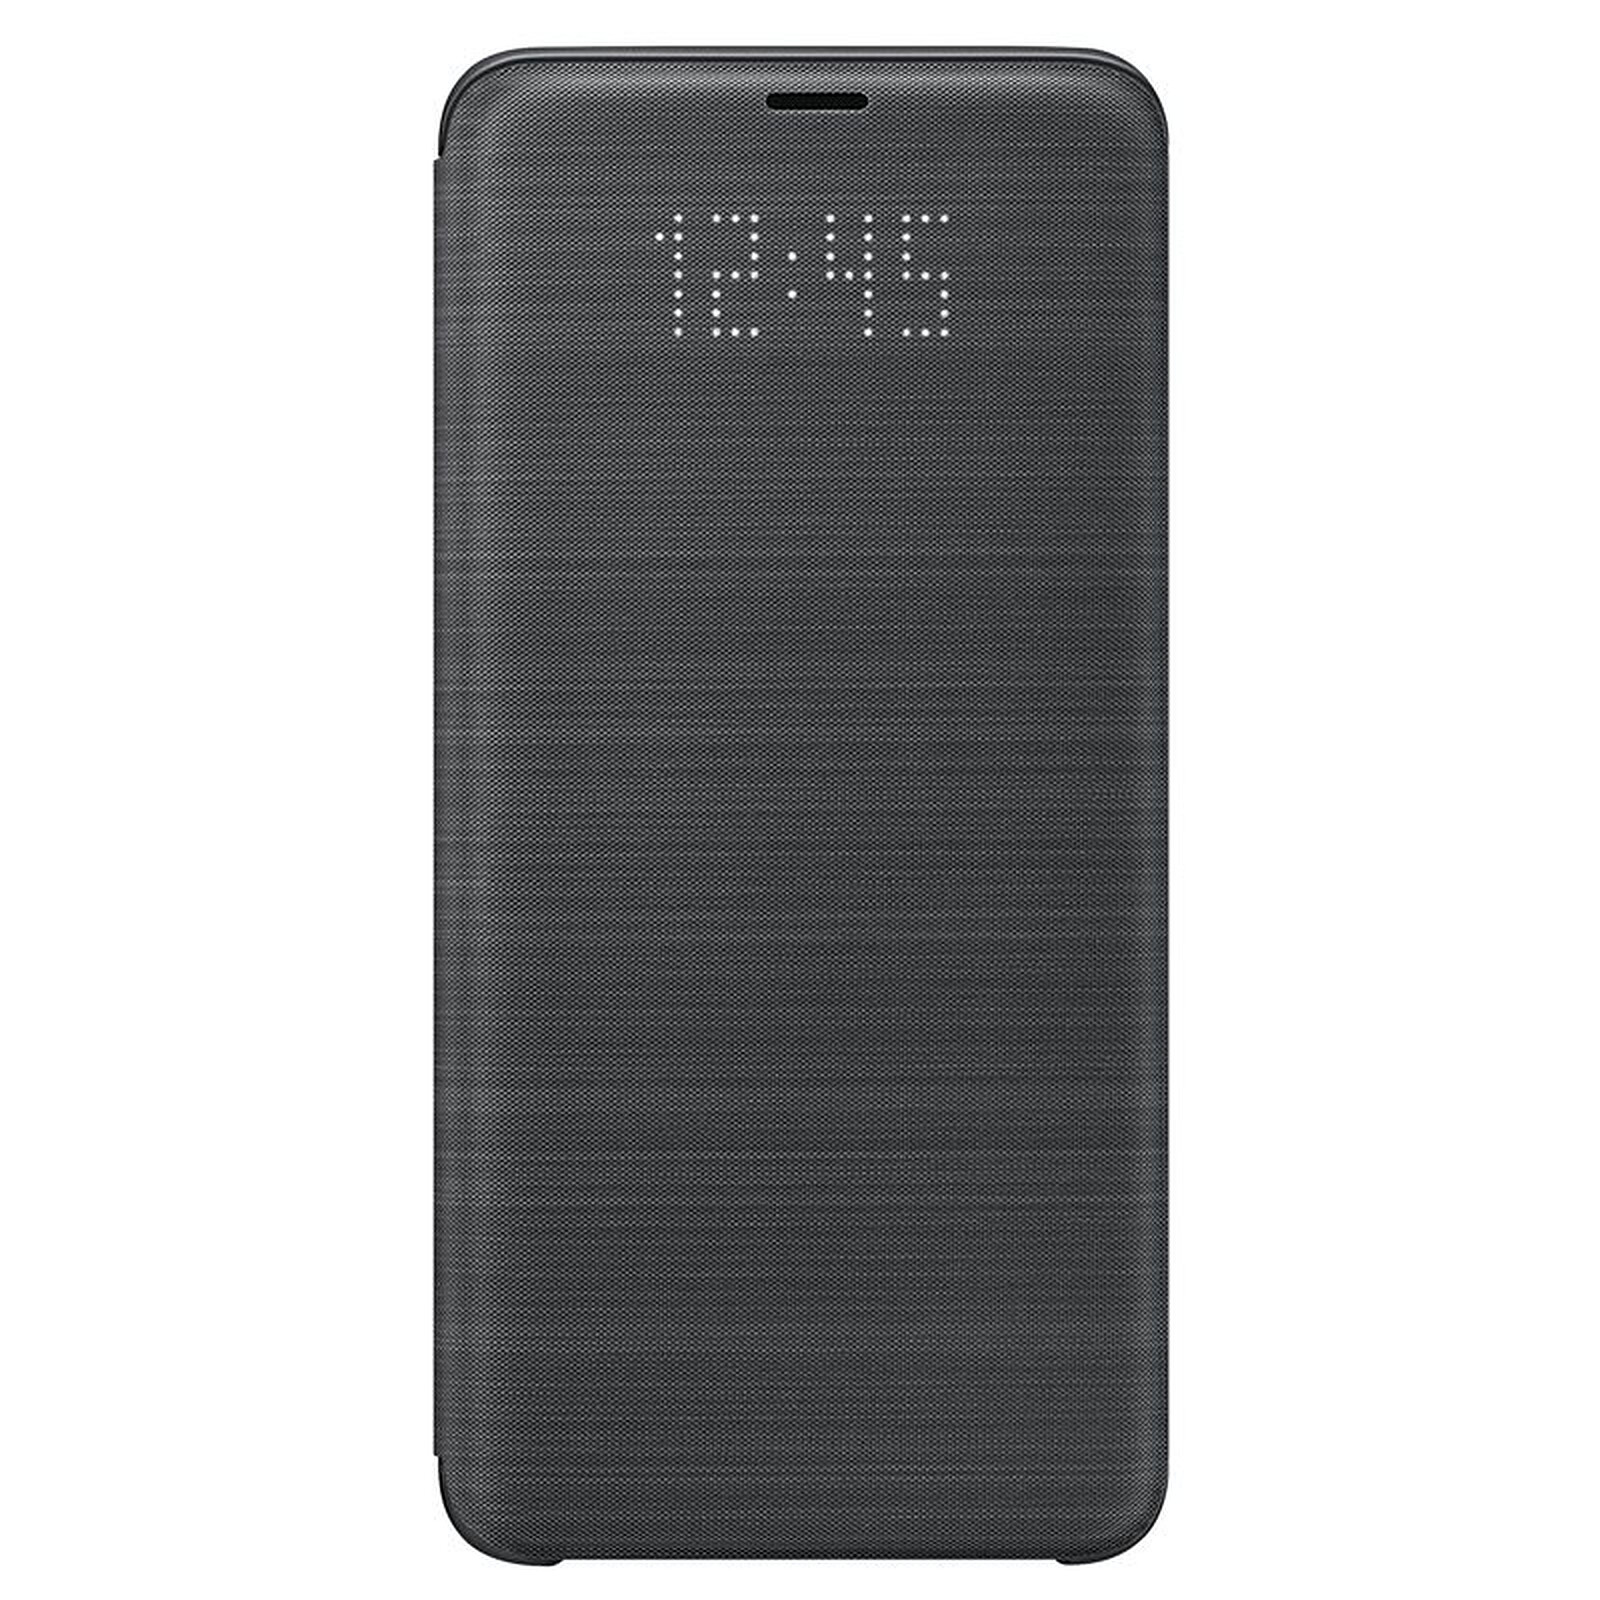 UEEBAI Coque pour Samsung Galaxy S9 Etui en Cuir PU Portefeuille Rétro Antichoc Flip Case Anti-Choc Housse avec Fentes de Cartes Fonction Support Noir Fermeture Magnétique